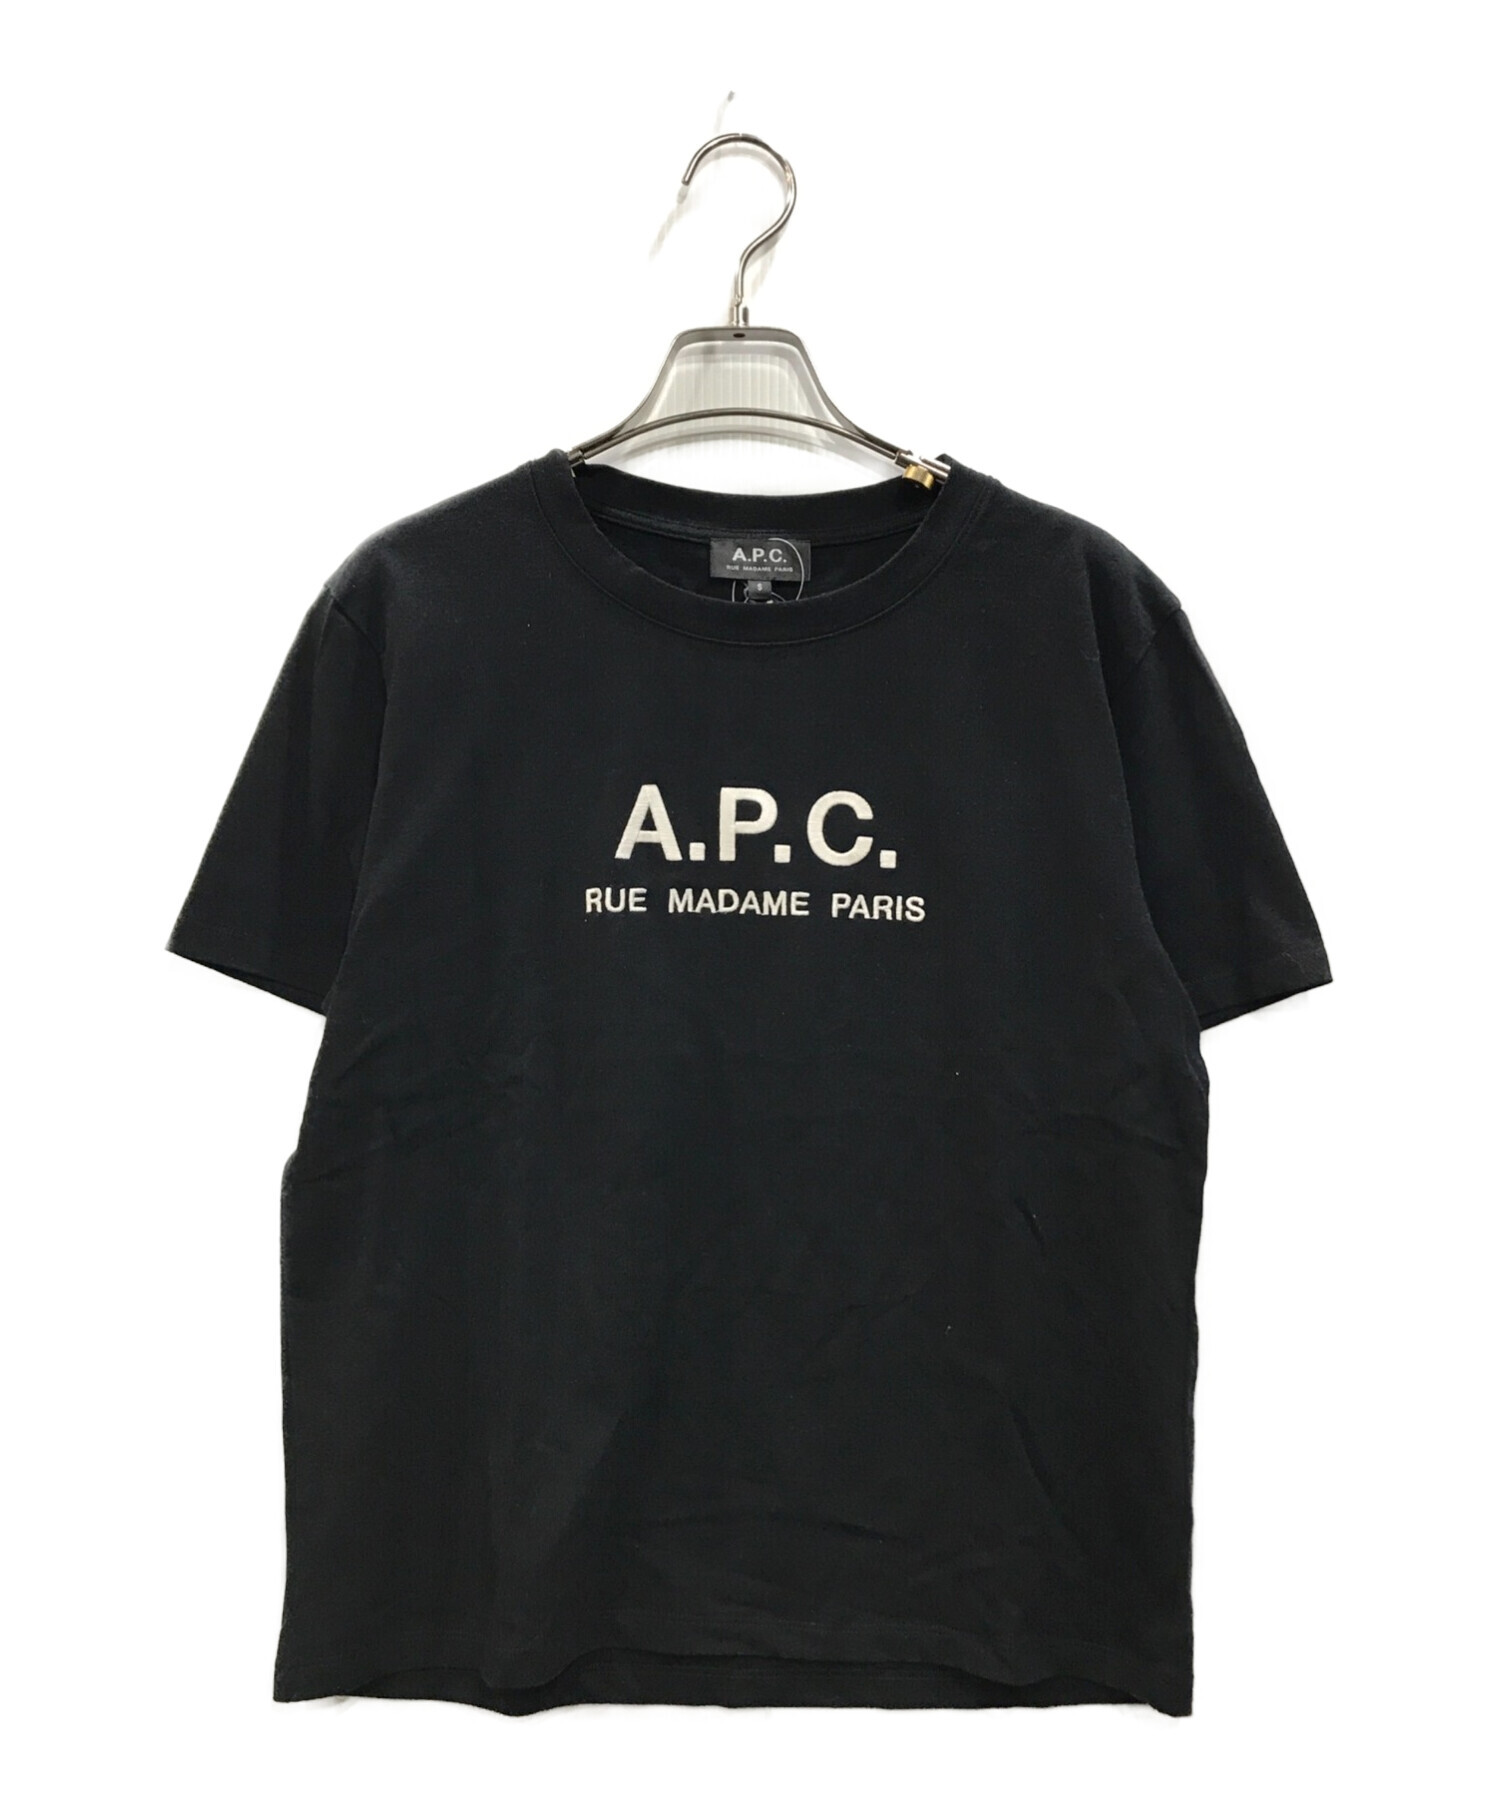 A.P.C. (アー・ペー・セー) FREAK'S STORE (フリークスストア) 別注ロゴ刺繍TEE ブラック サイズ:S